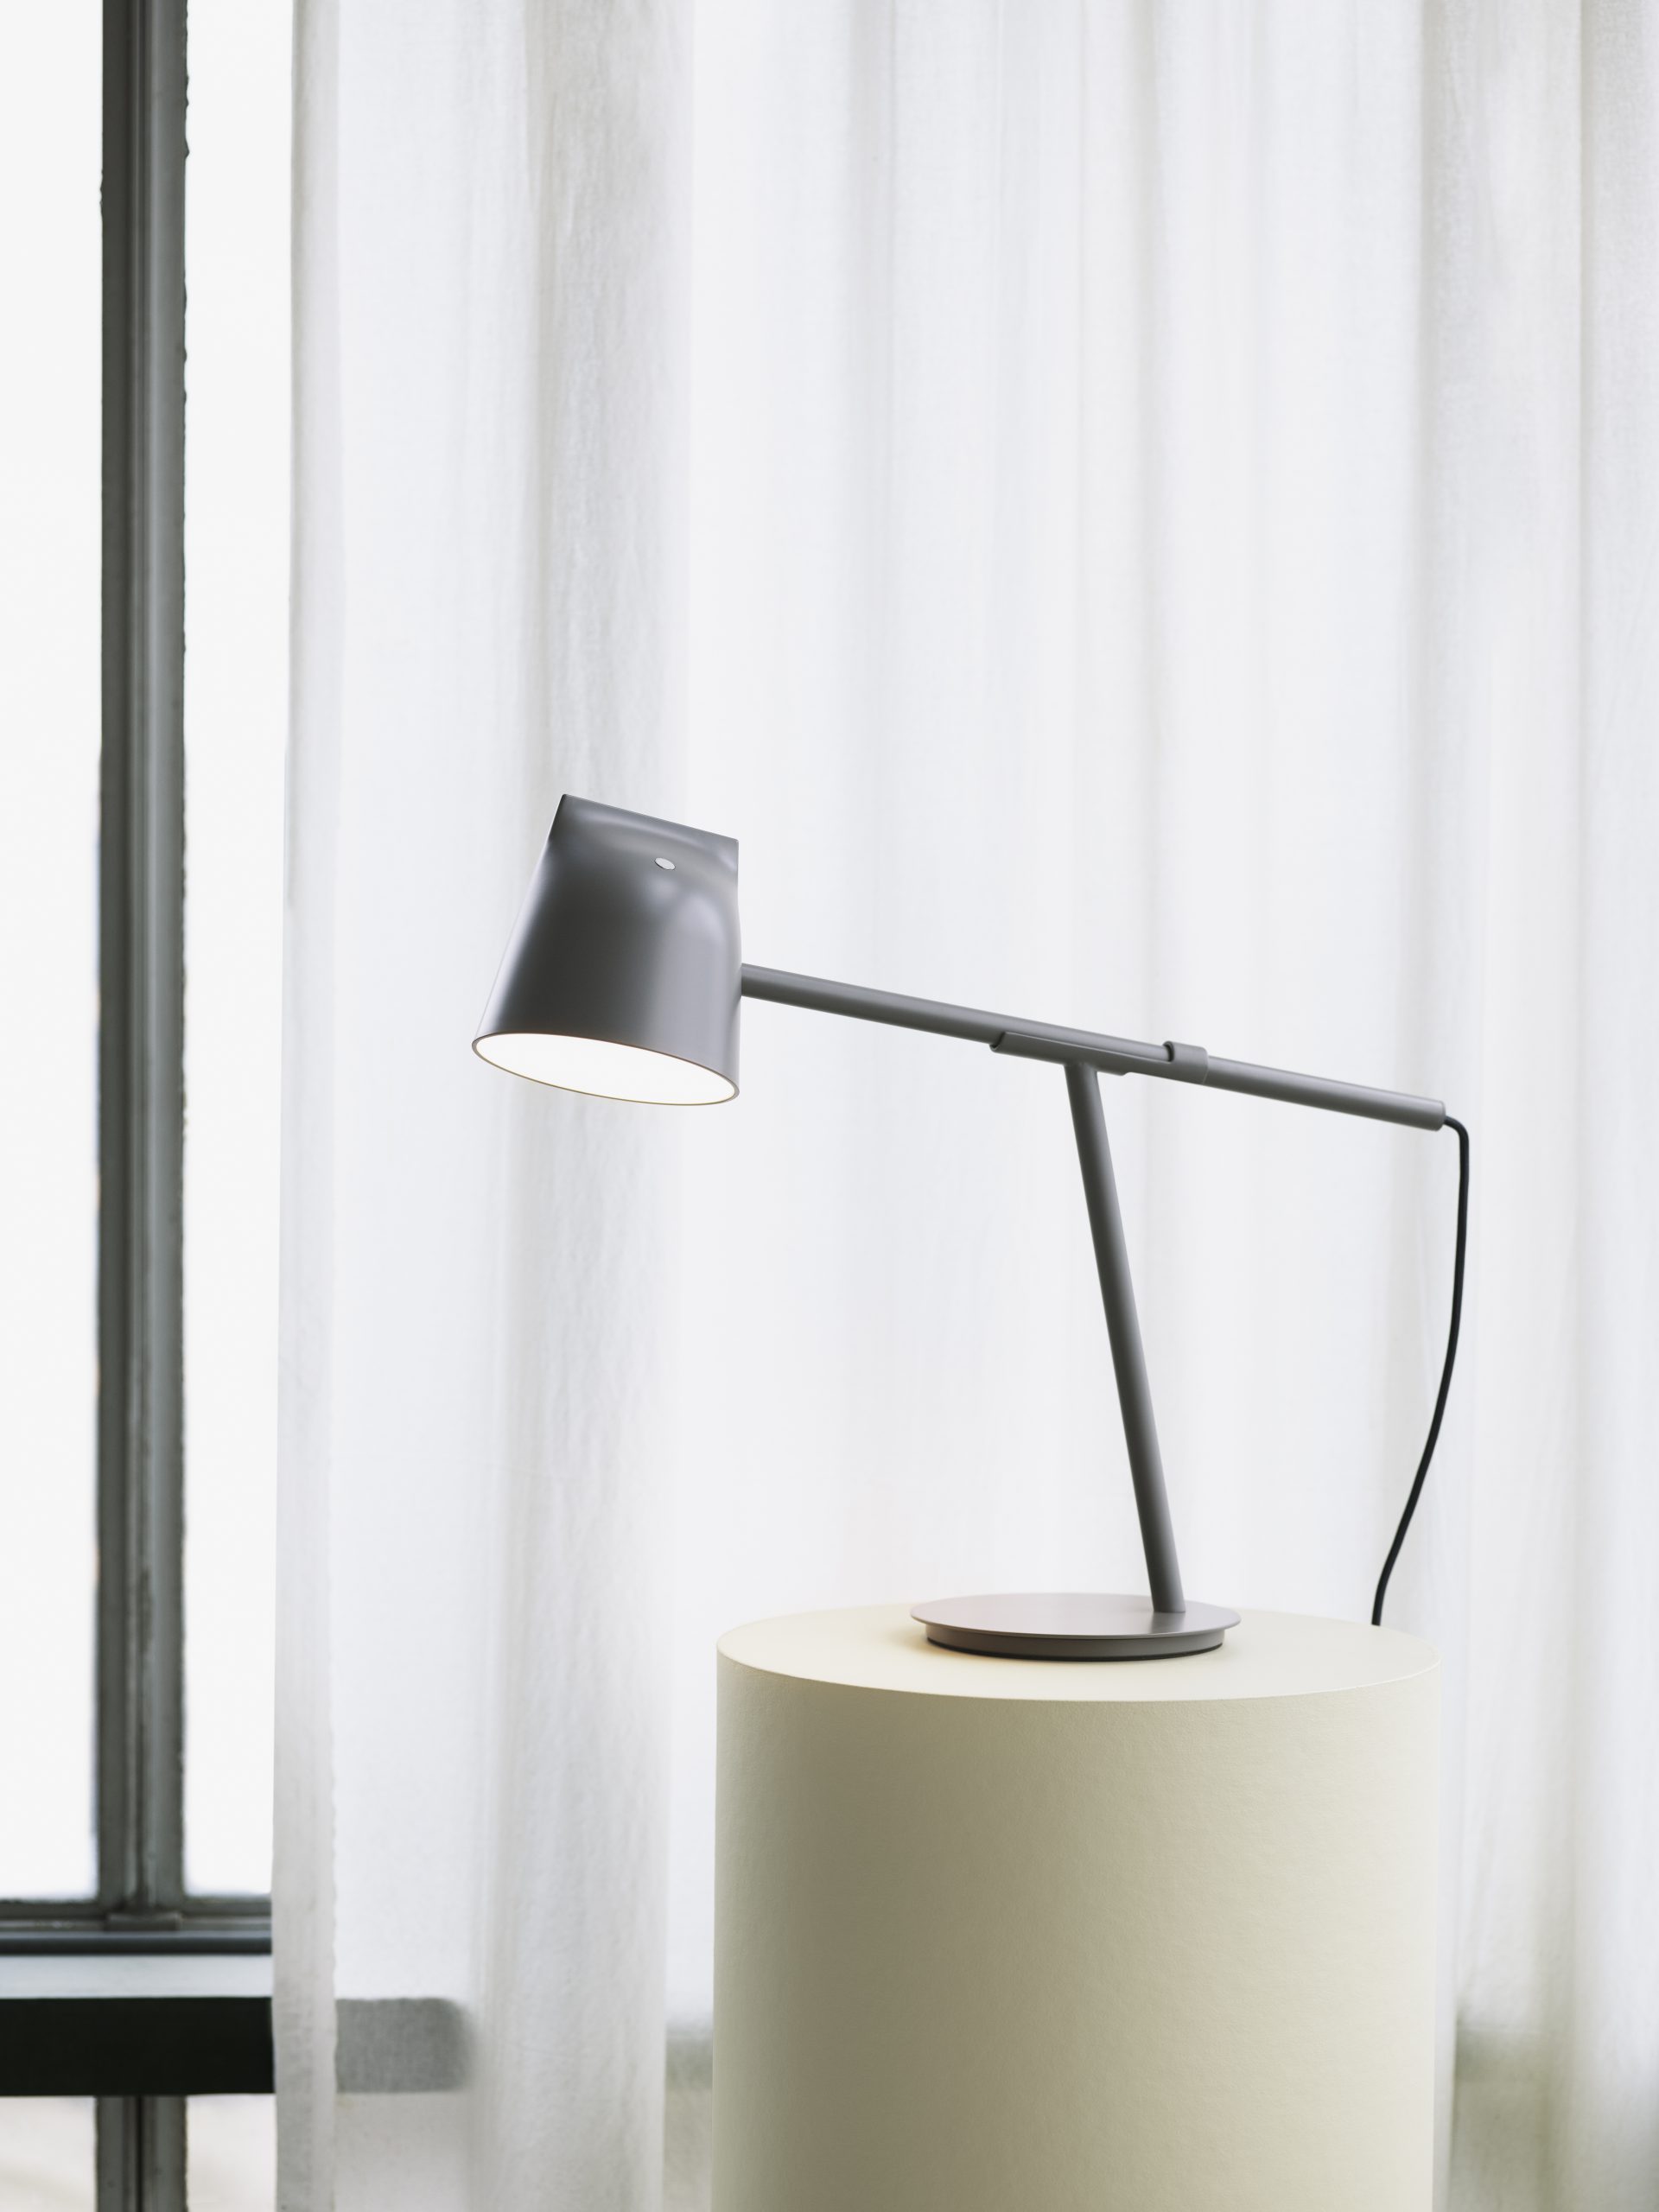 Momento desk lamp by Debiasi sandri for Normann Copenhagen